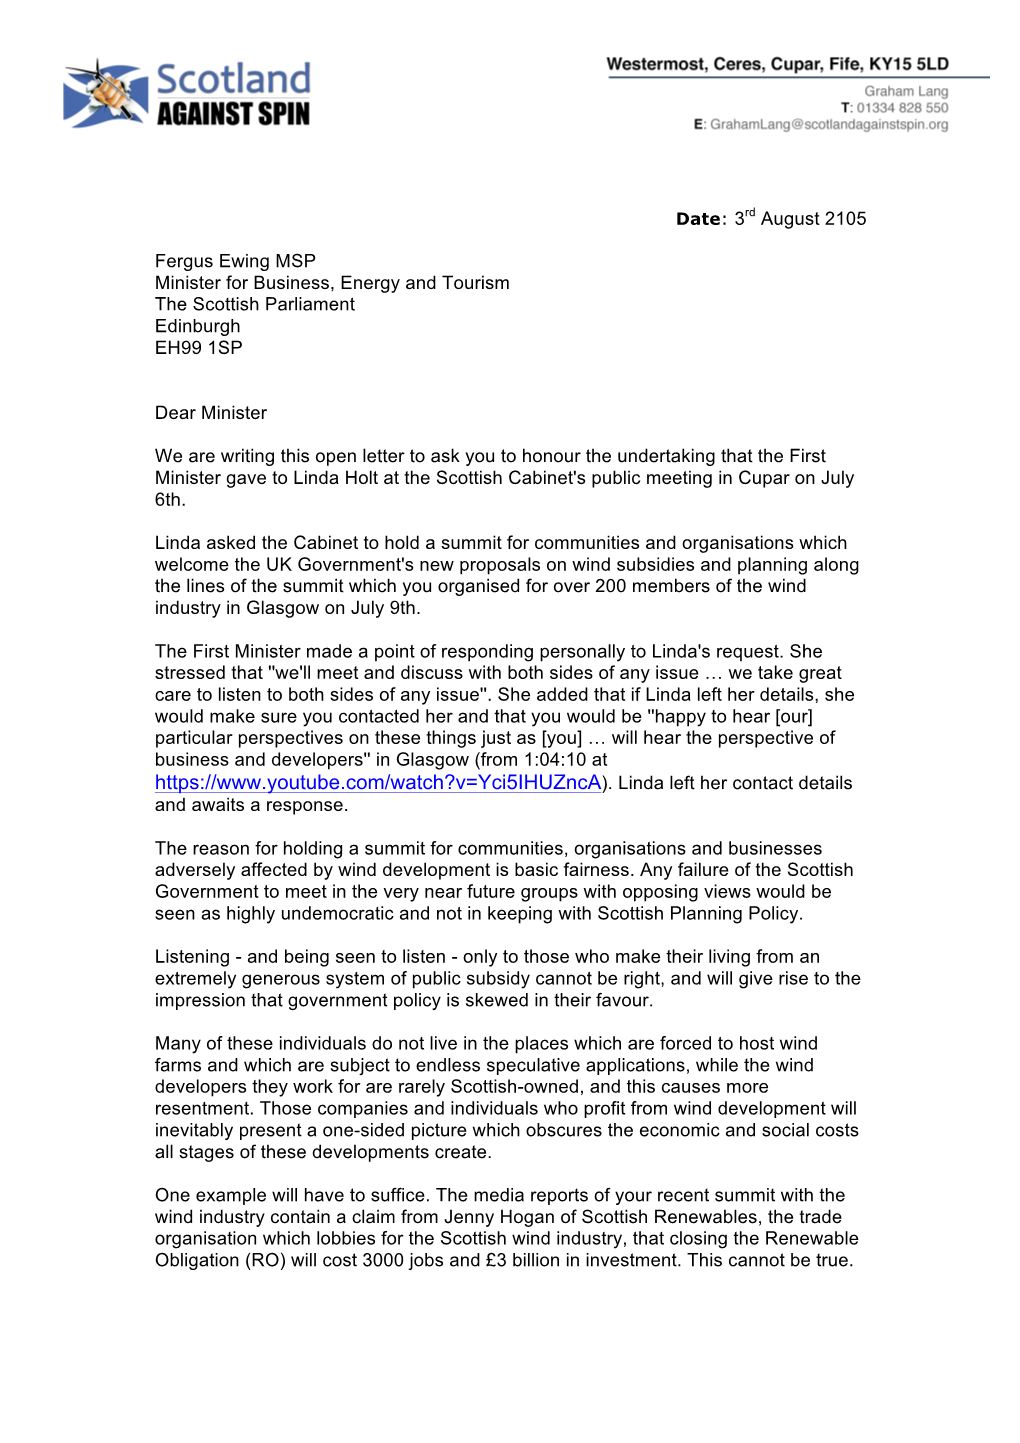 SAS-Open Letter to Fergus Ewing MSP-03